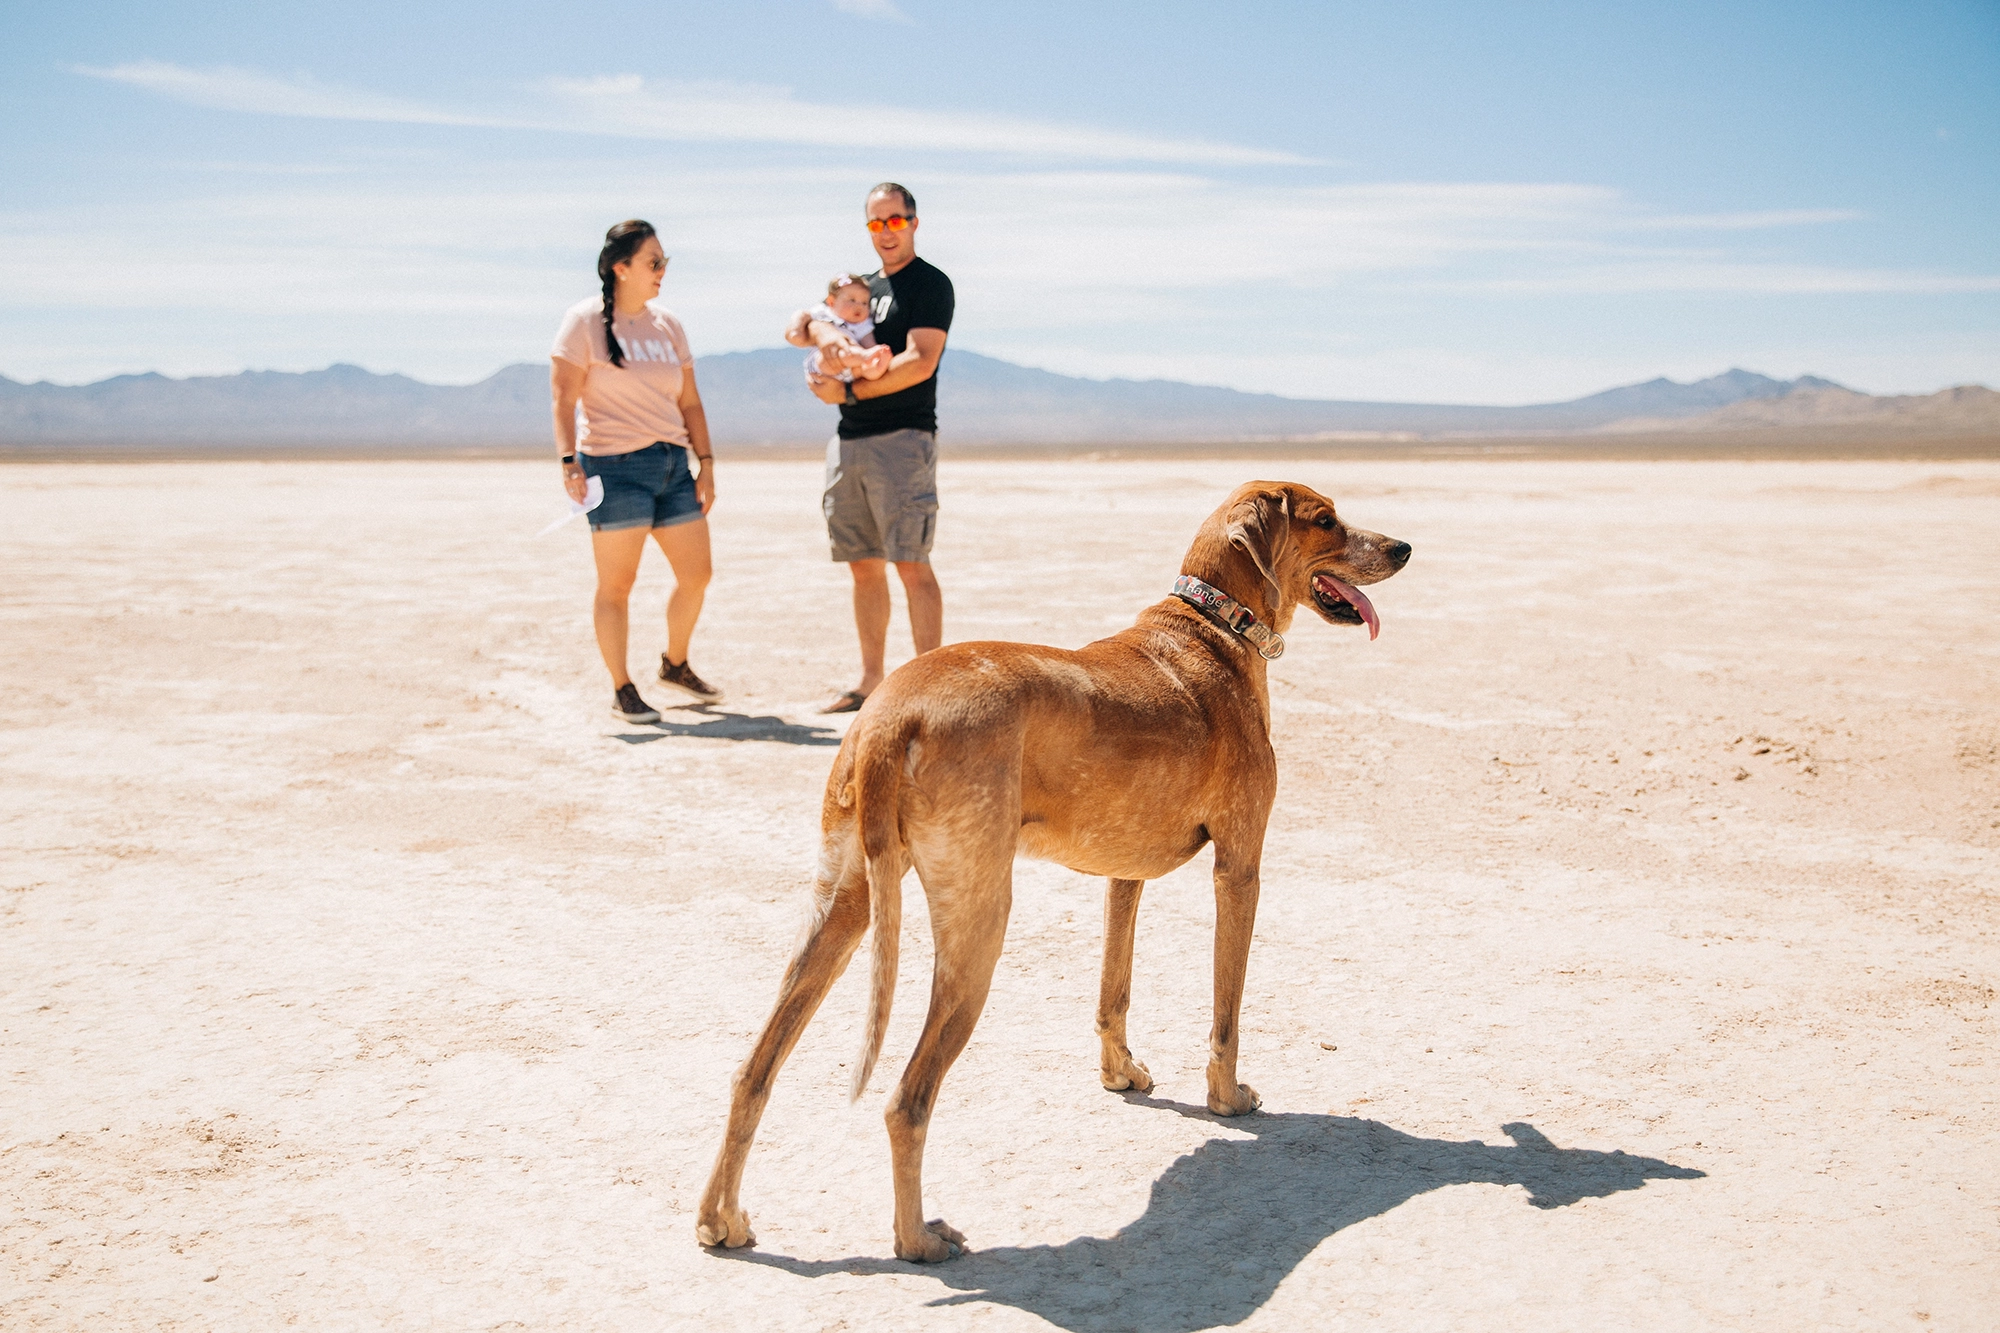 Las Vegas desert family session with dog.